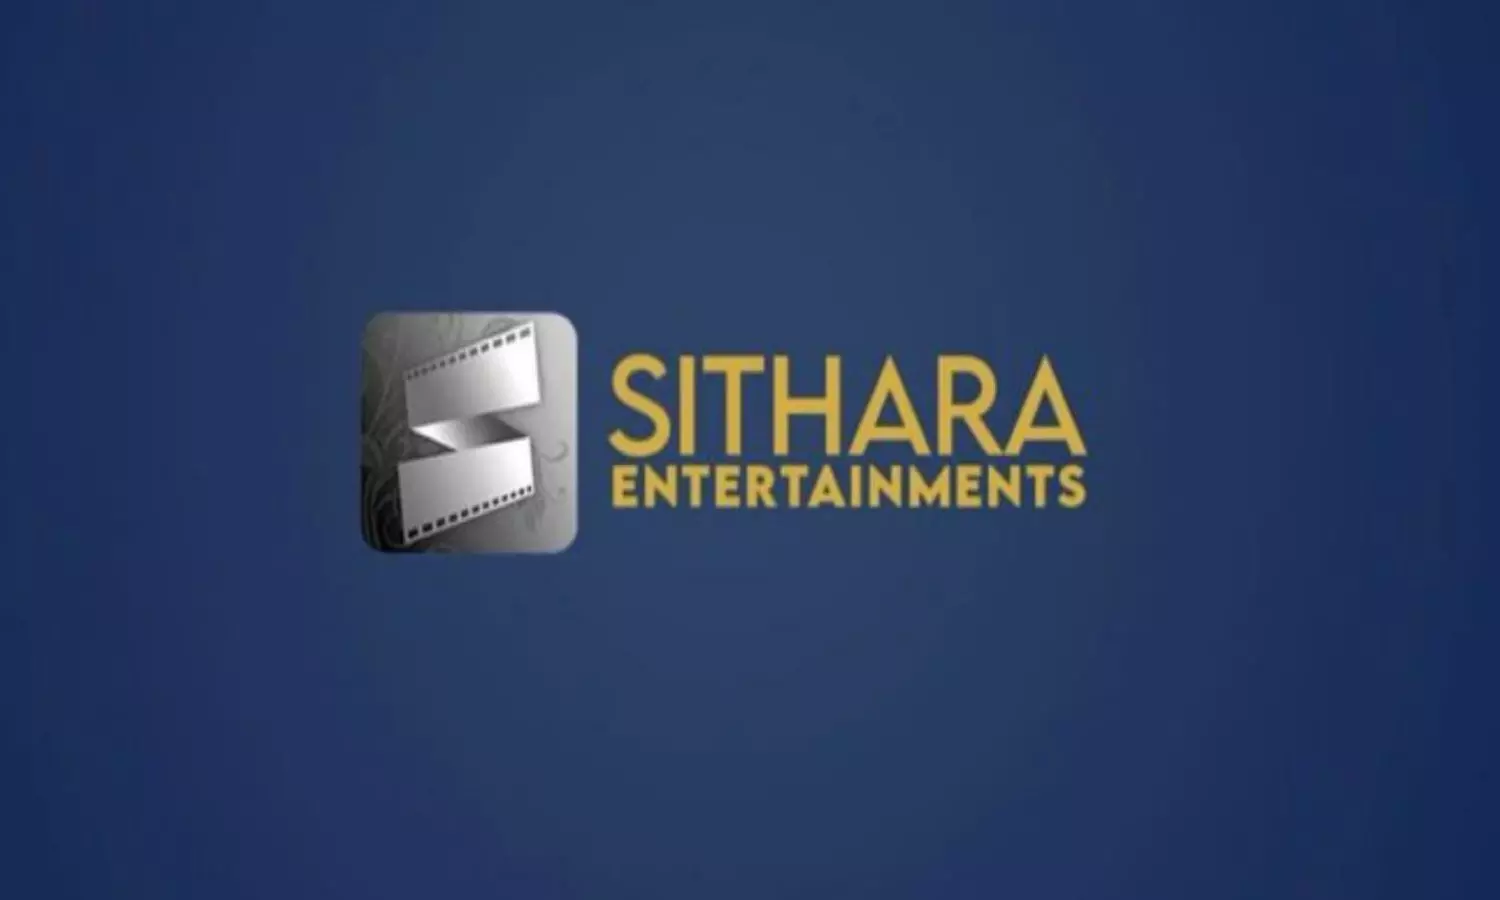 Sithara Entertainments | పంపిణీ రంగంలోకి మరో నిర్మాణ సంస్థ